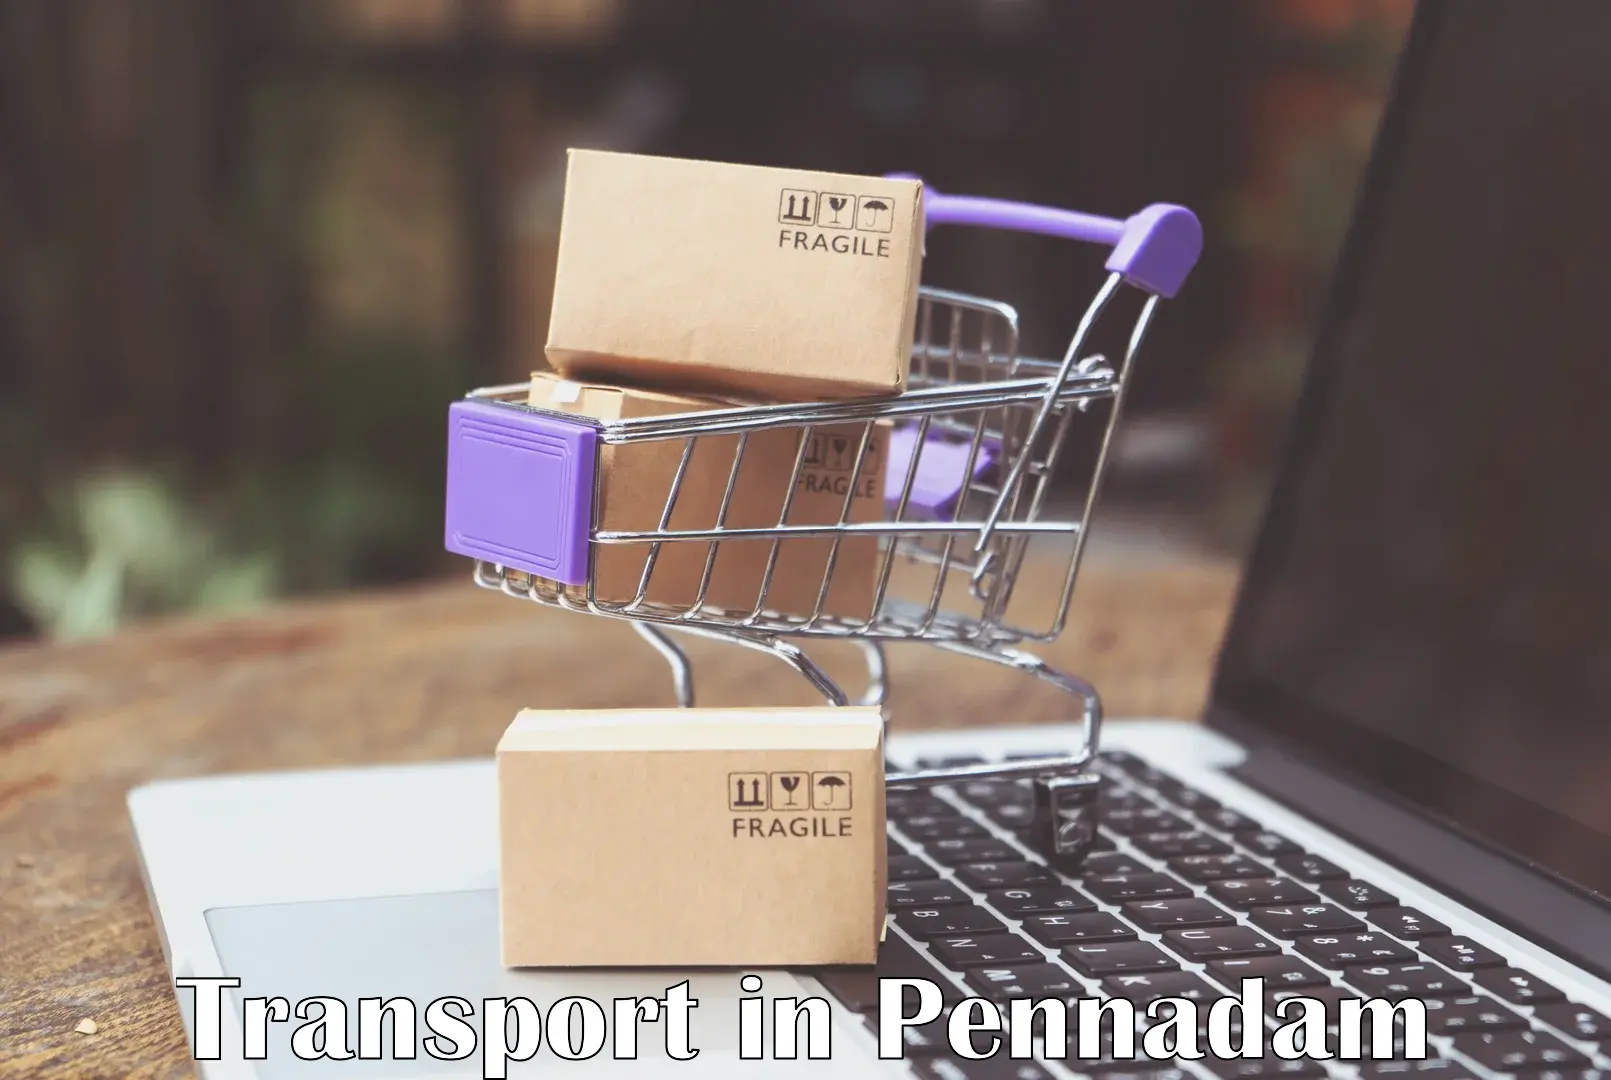 Shipping partner in Pennadam